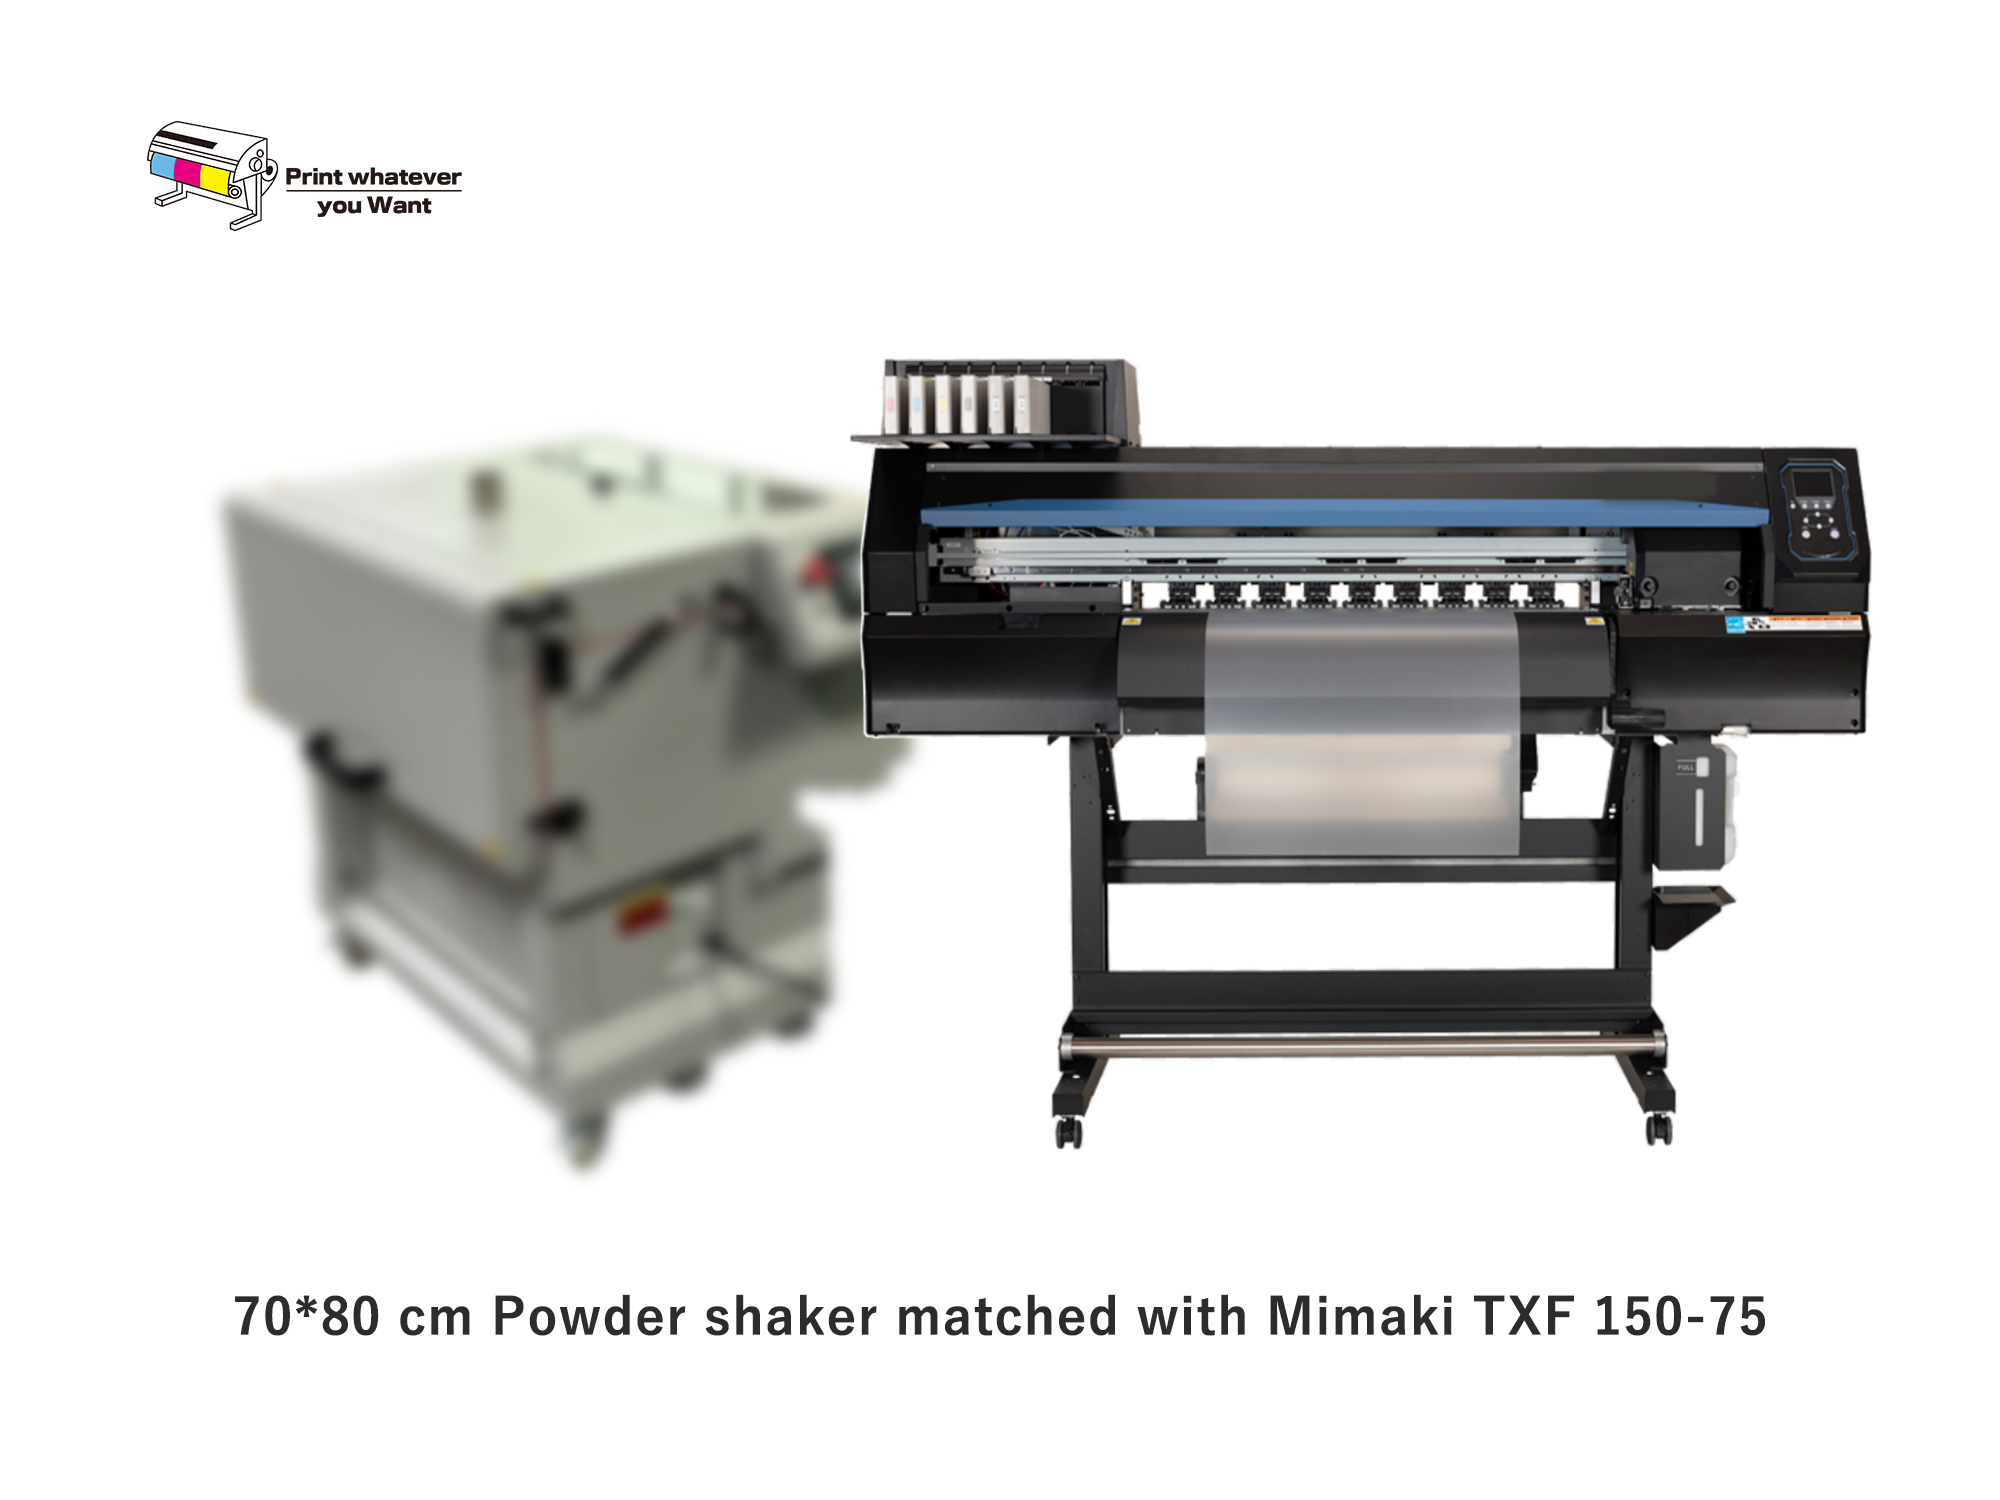 Nuevo agitador de polvo PrintWant combinado con Mimaki TXF 150-75